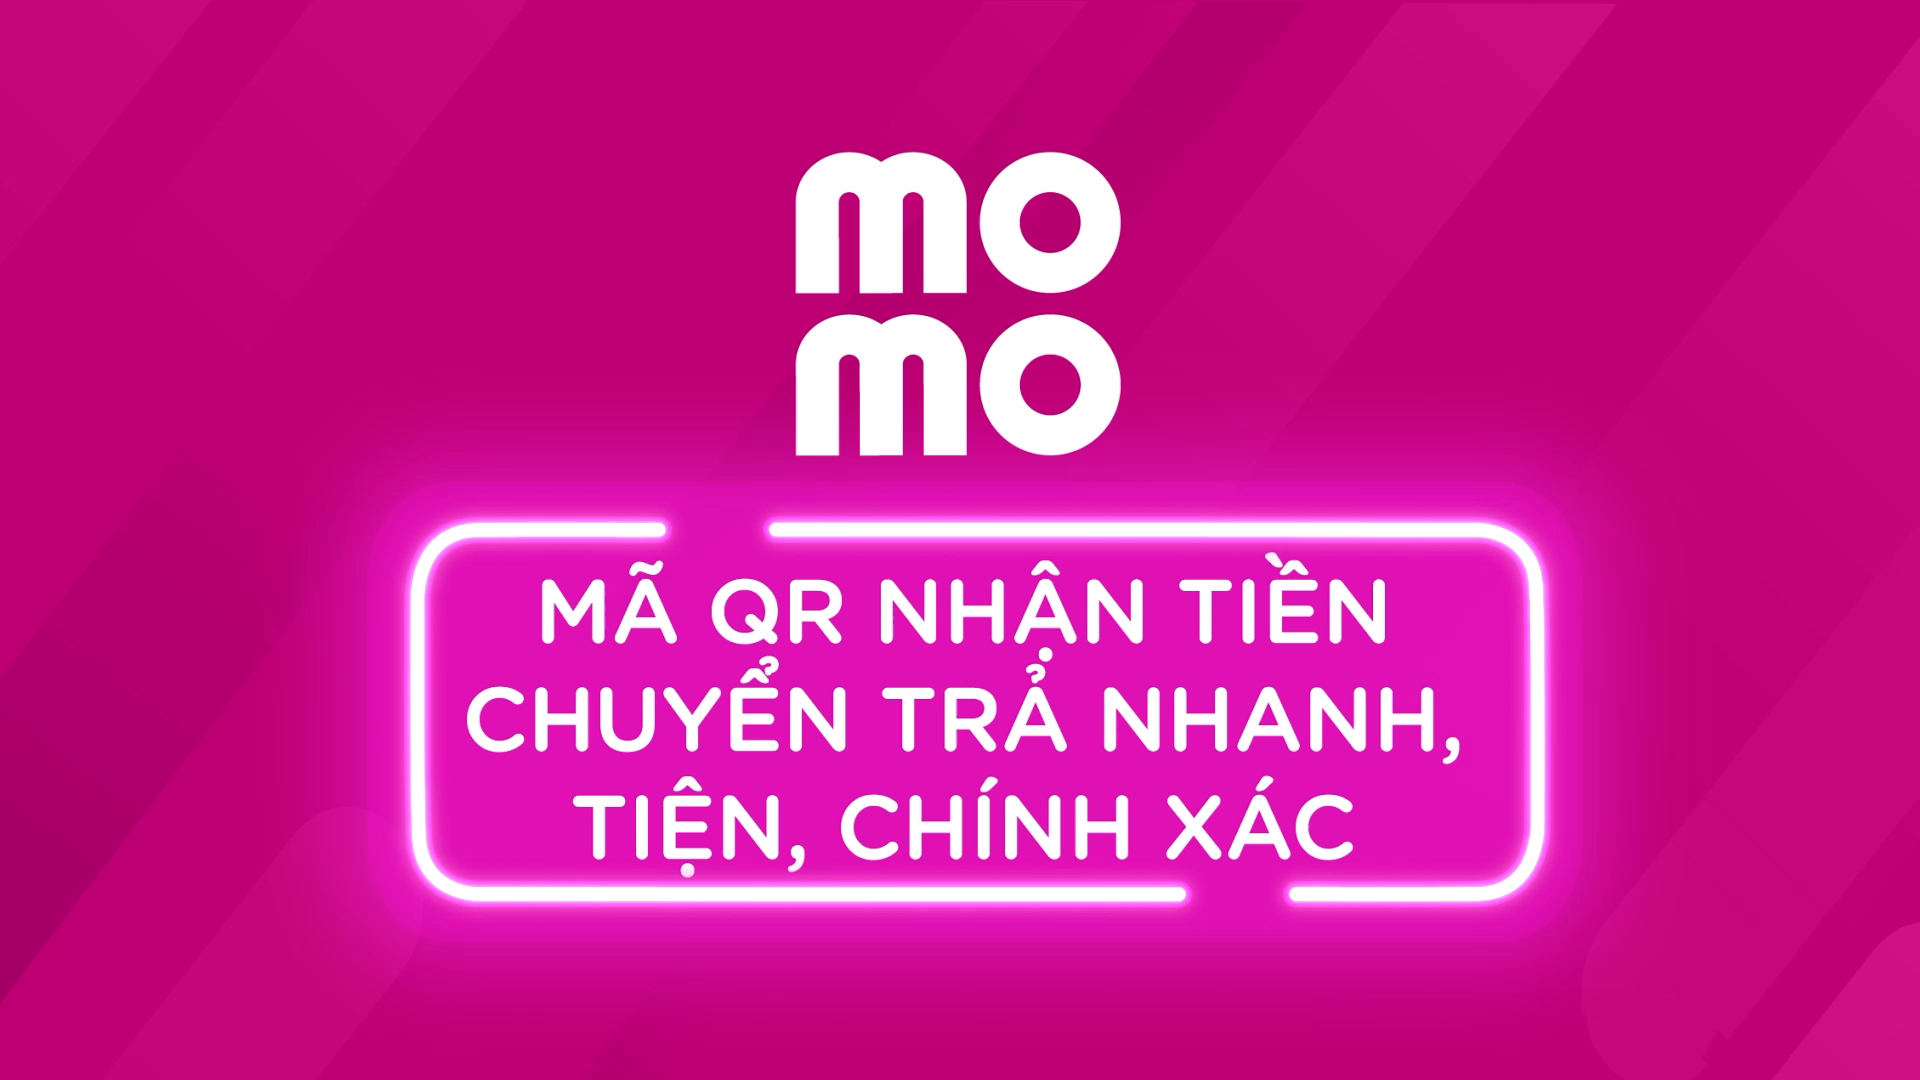 Nhận tiền bằng QR của MoMo với nhiều lợi ích vượt trội: